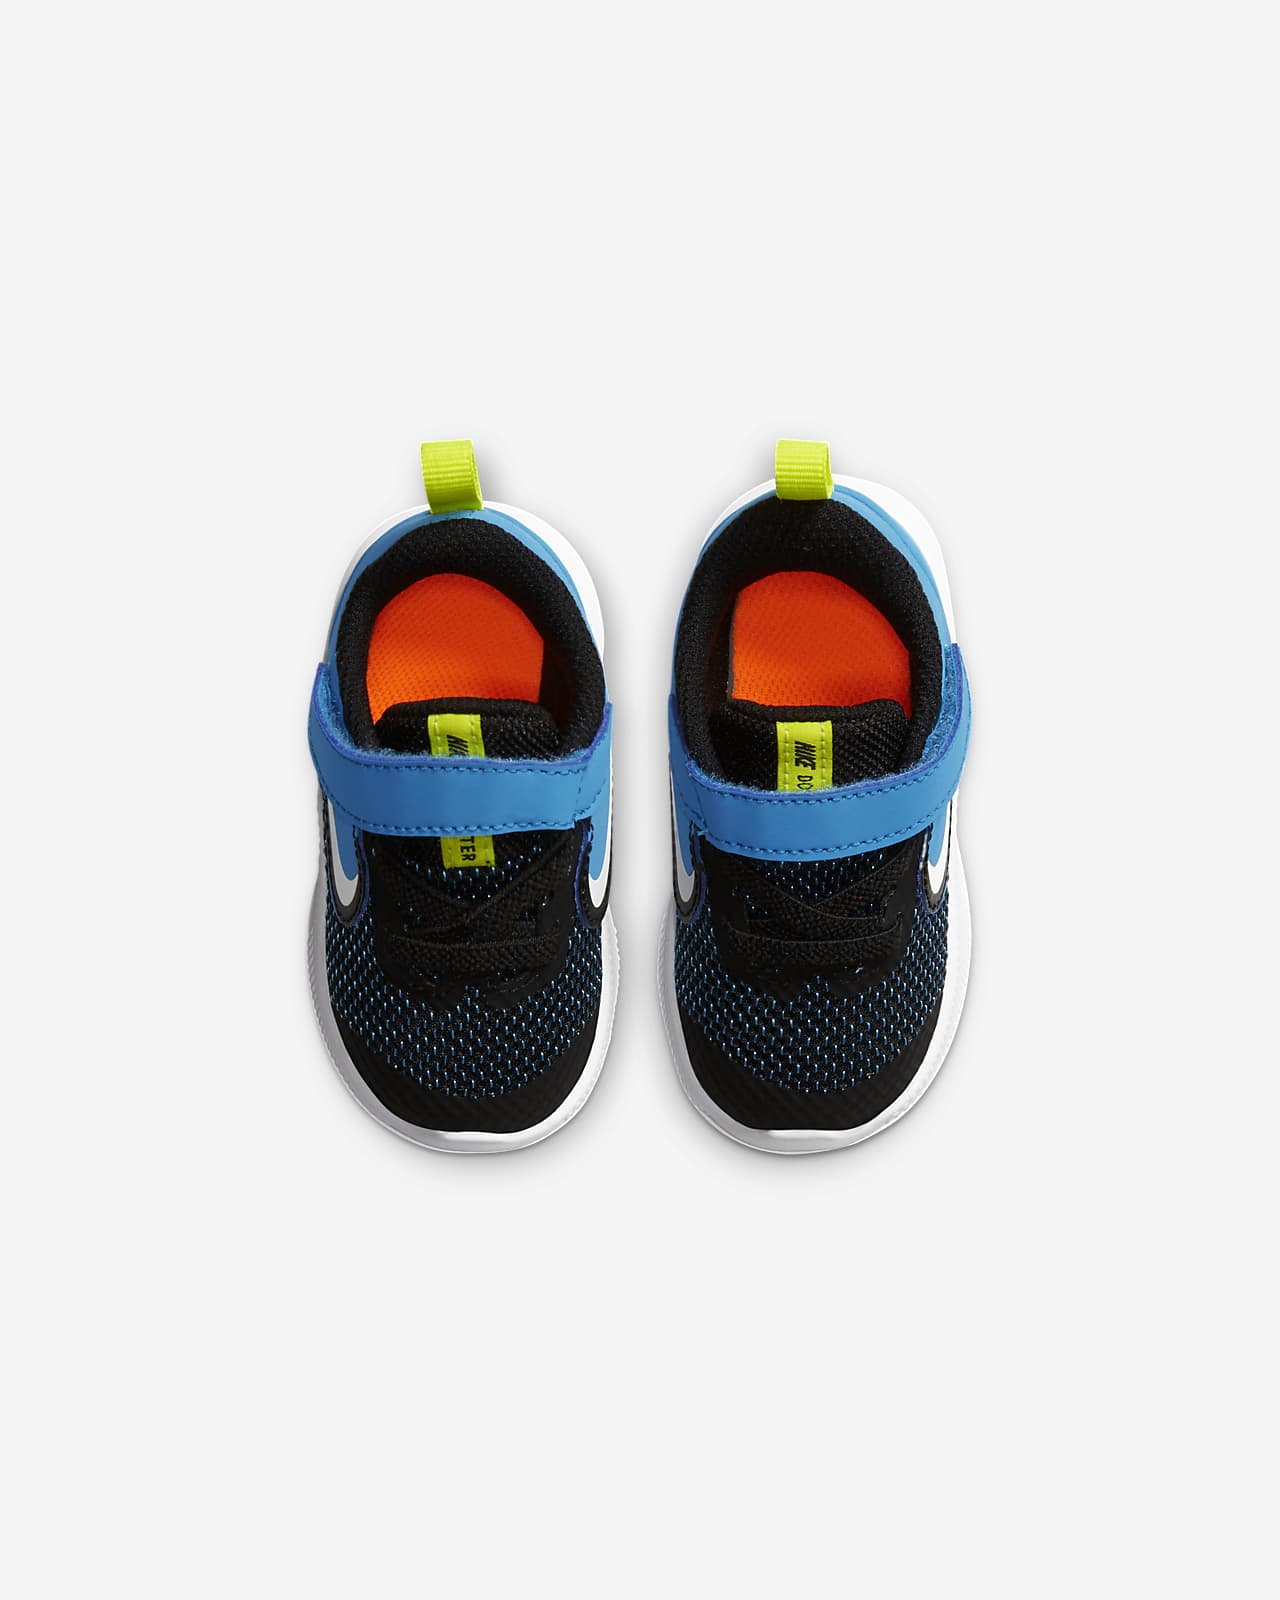 Nike Downshifter 9 Infant/Toddler Shoe 